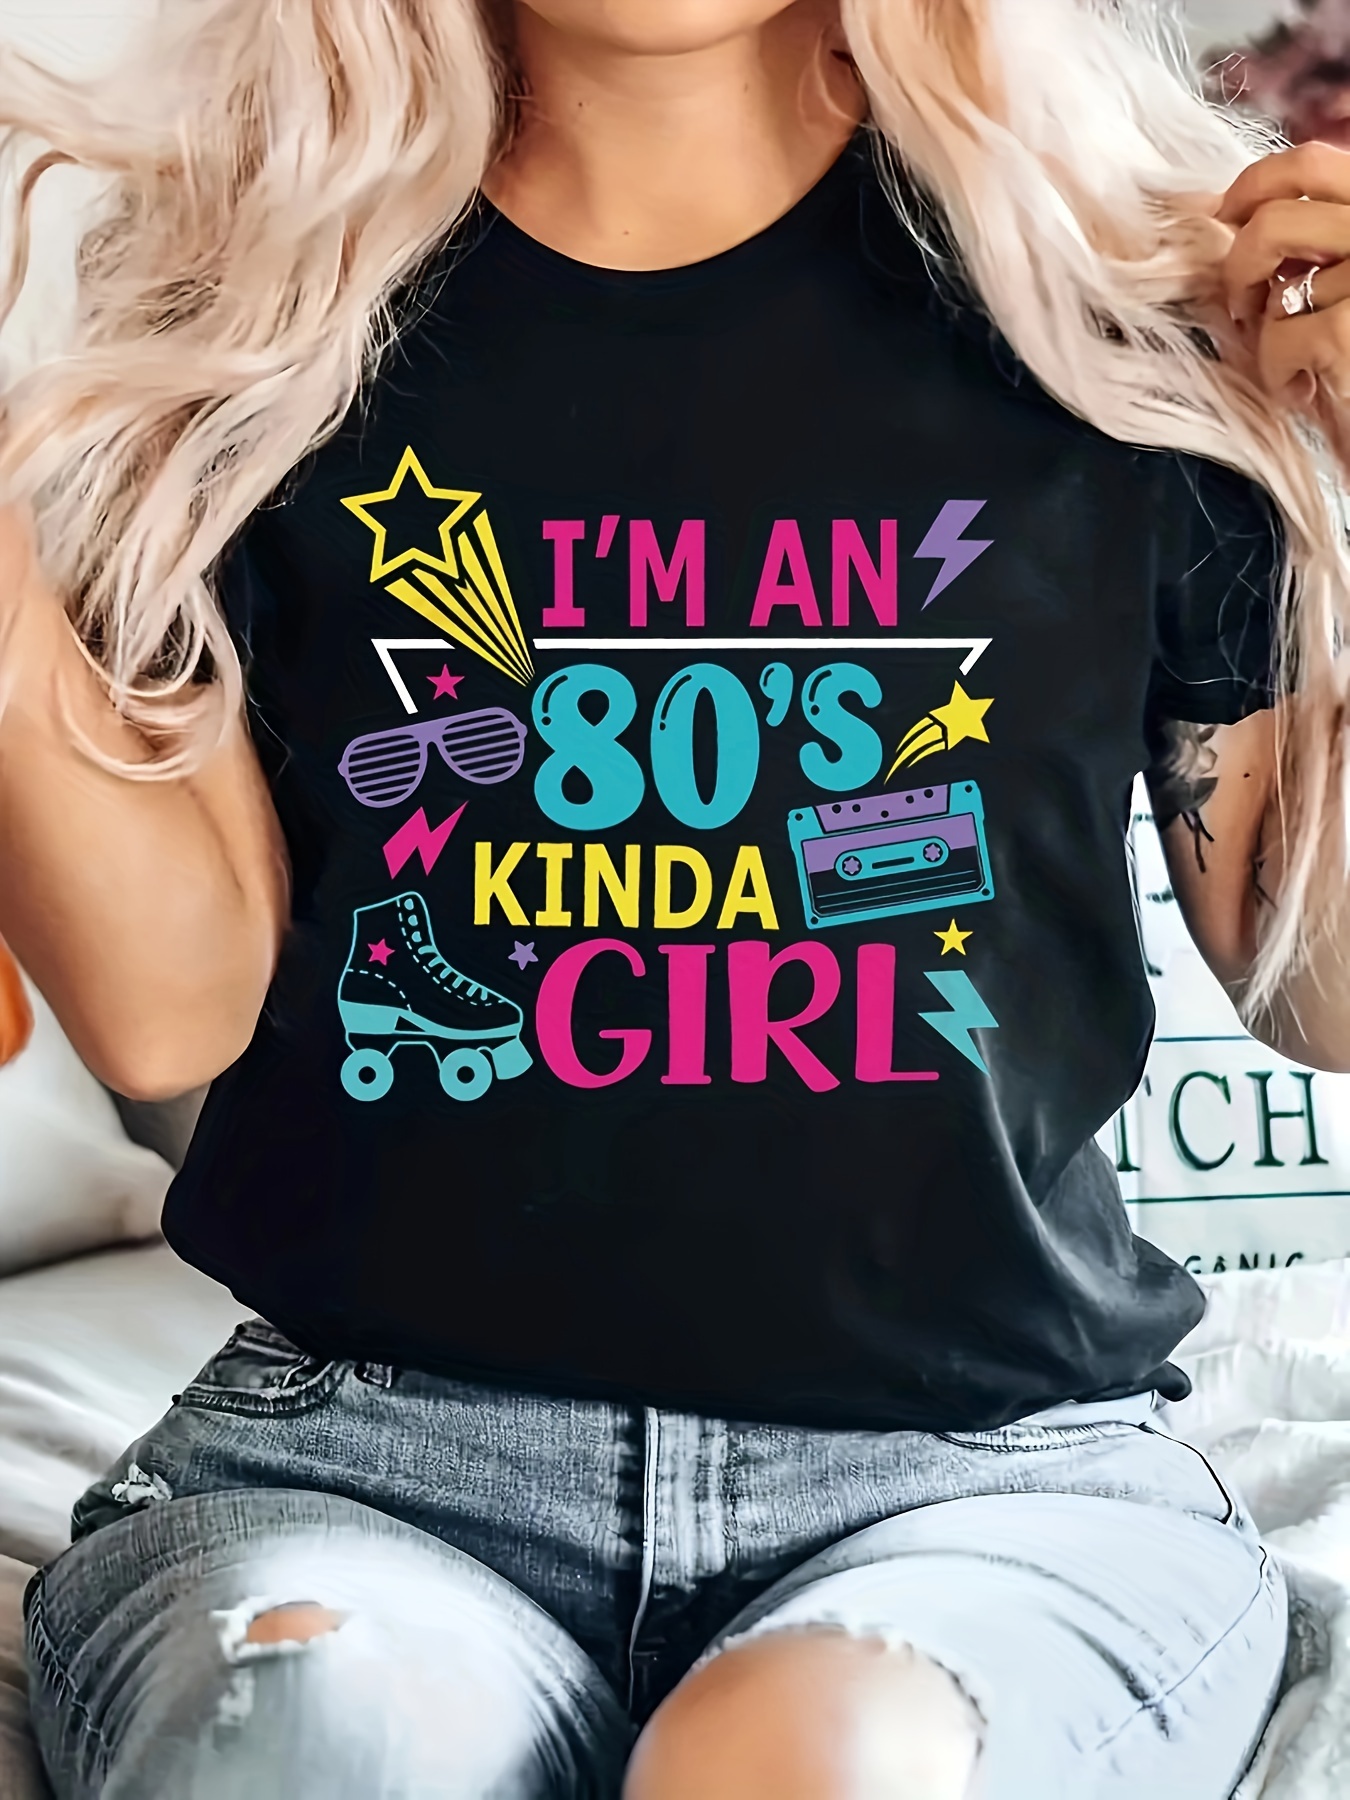 THE 80s FASHION (T-shirt) - (S/M): : Fashion